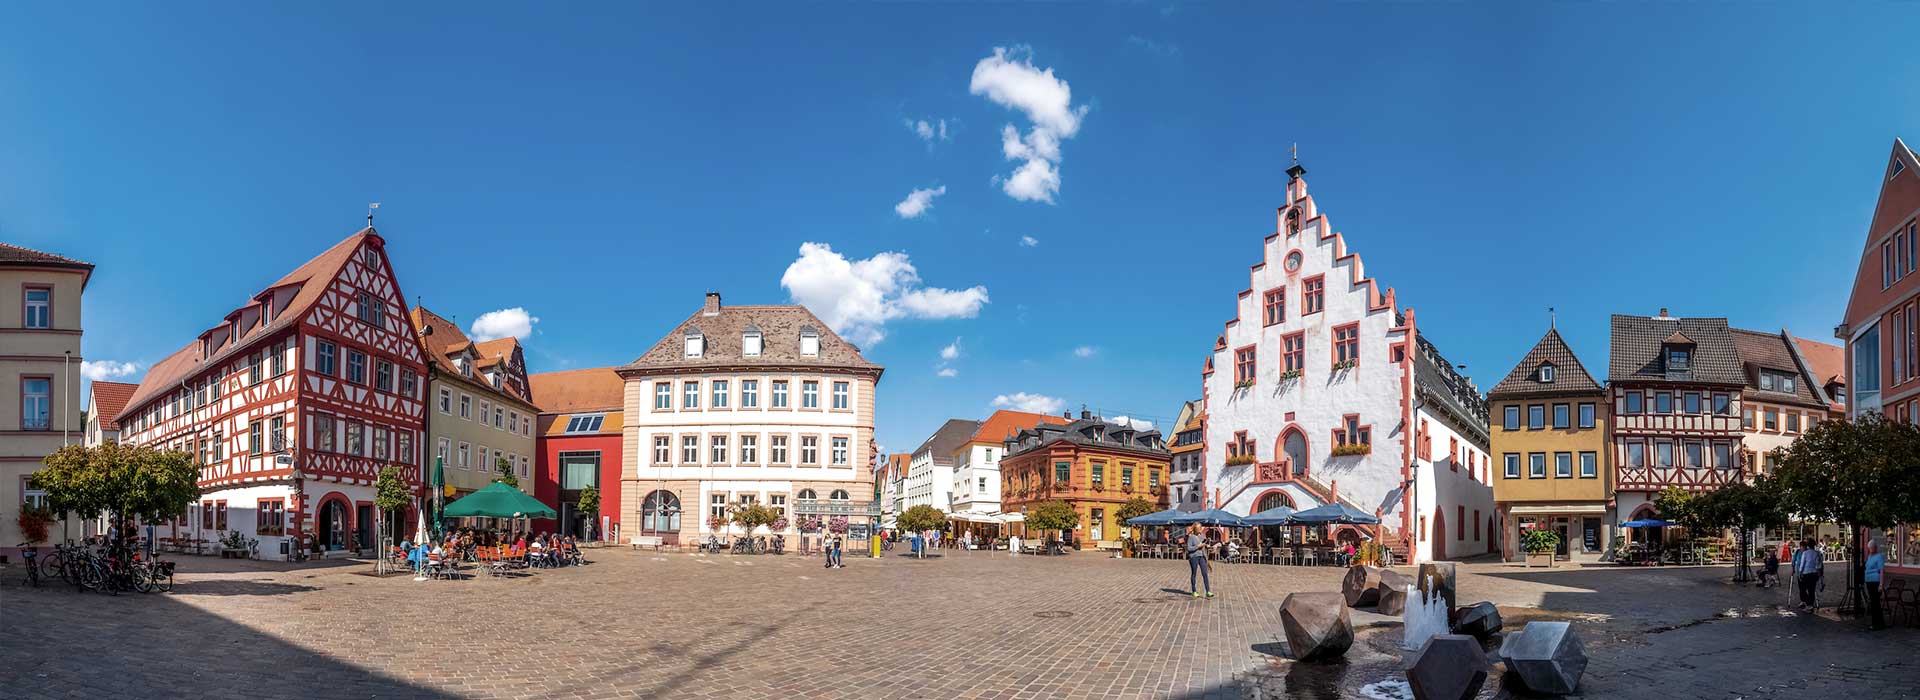 historischer-marktplatz-in-karlstadt-am-main-beim-hotel-alte-brauerei